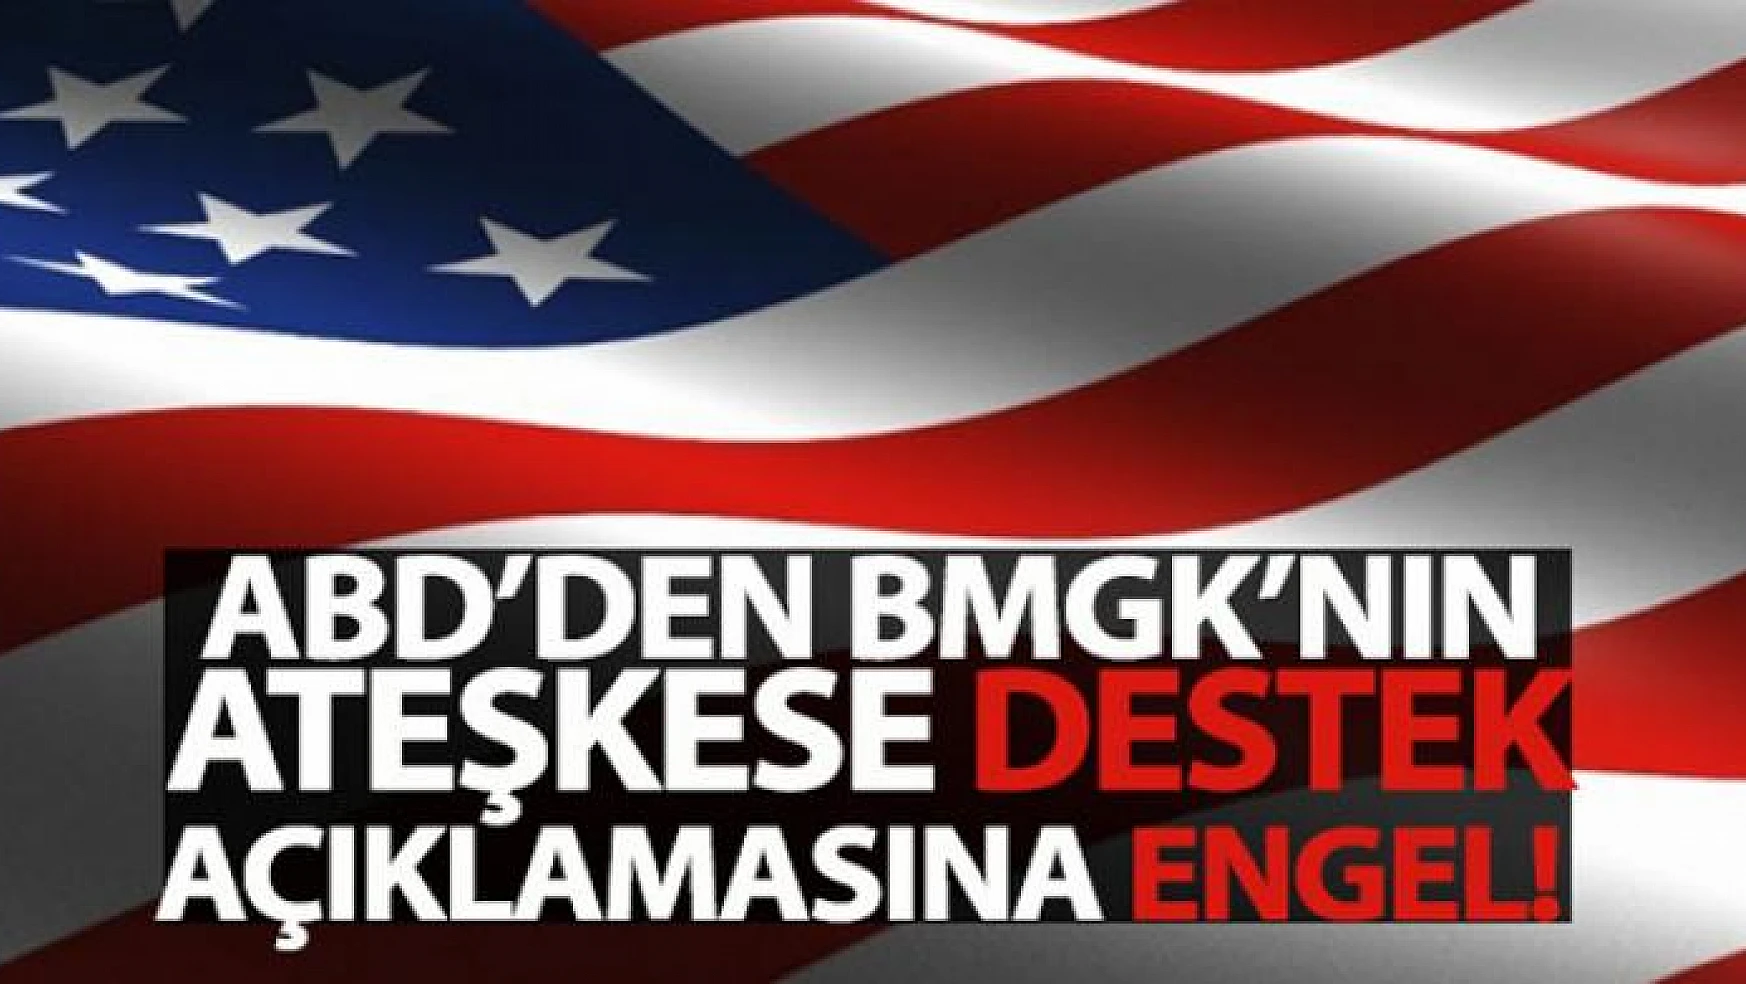 ABD'den BMGK'nın ateşkese destek açıklamasına engel